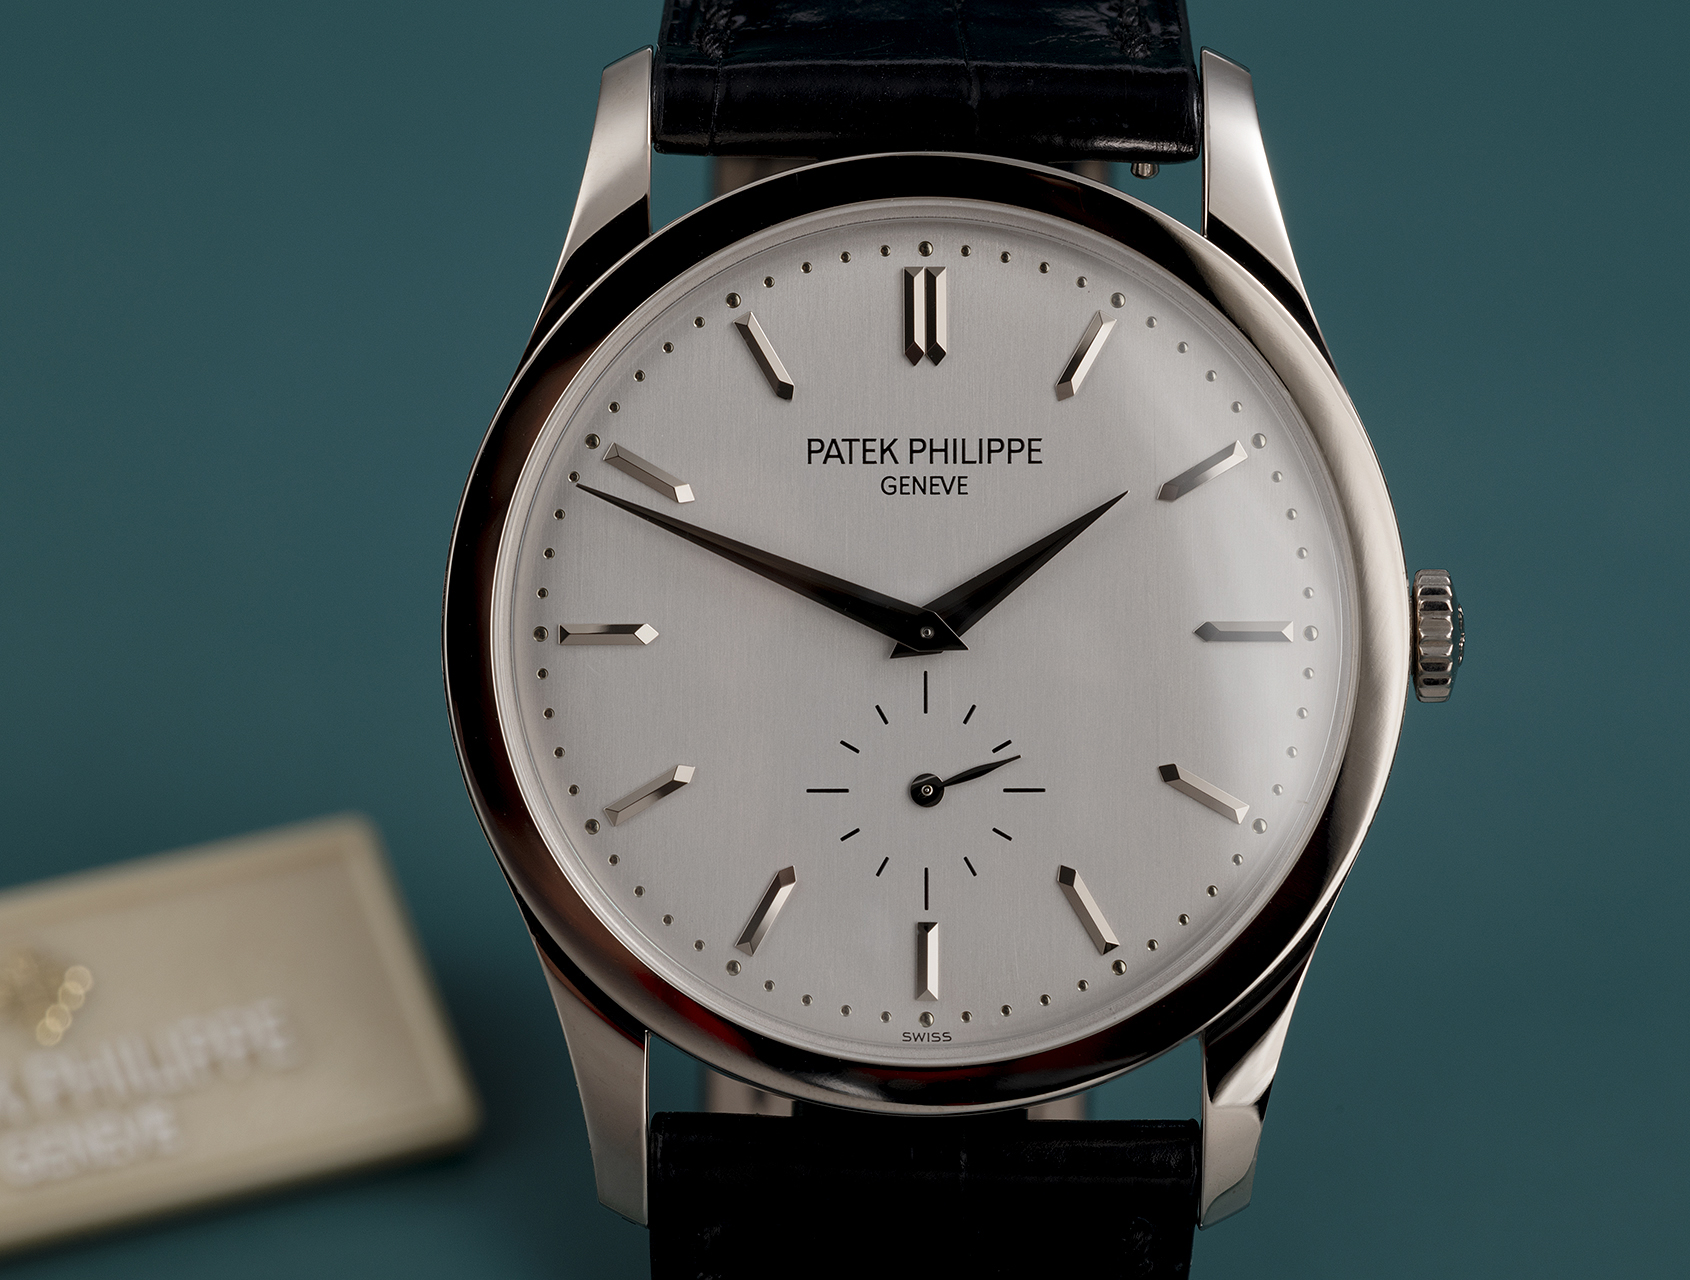 Patek Philippe Calatrava Watches | ref 5196G-001 | 5196G-001 - UK ...